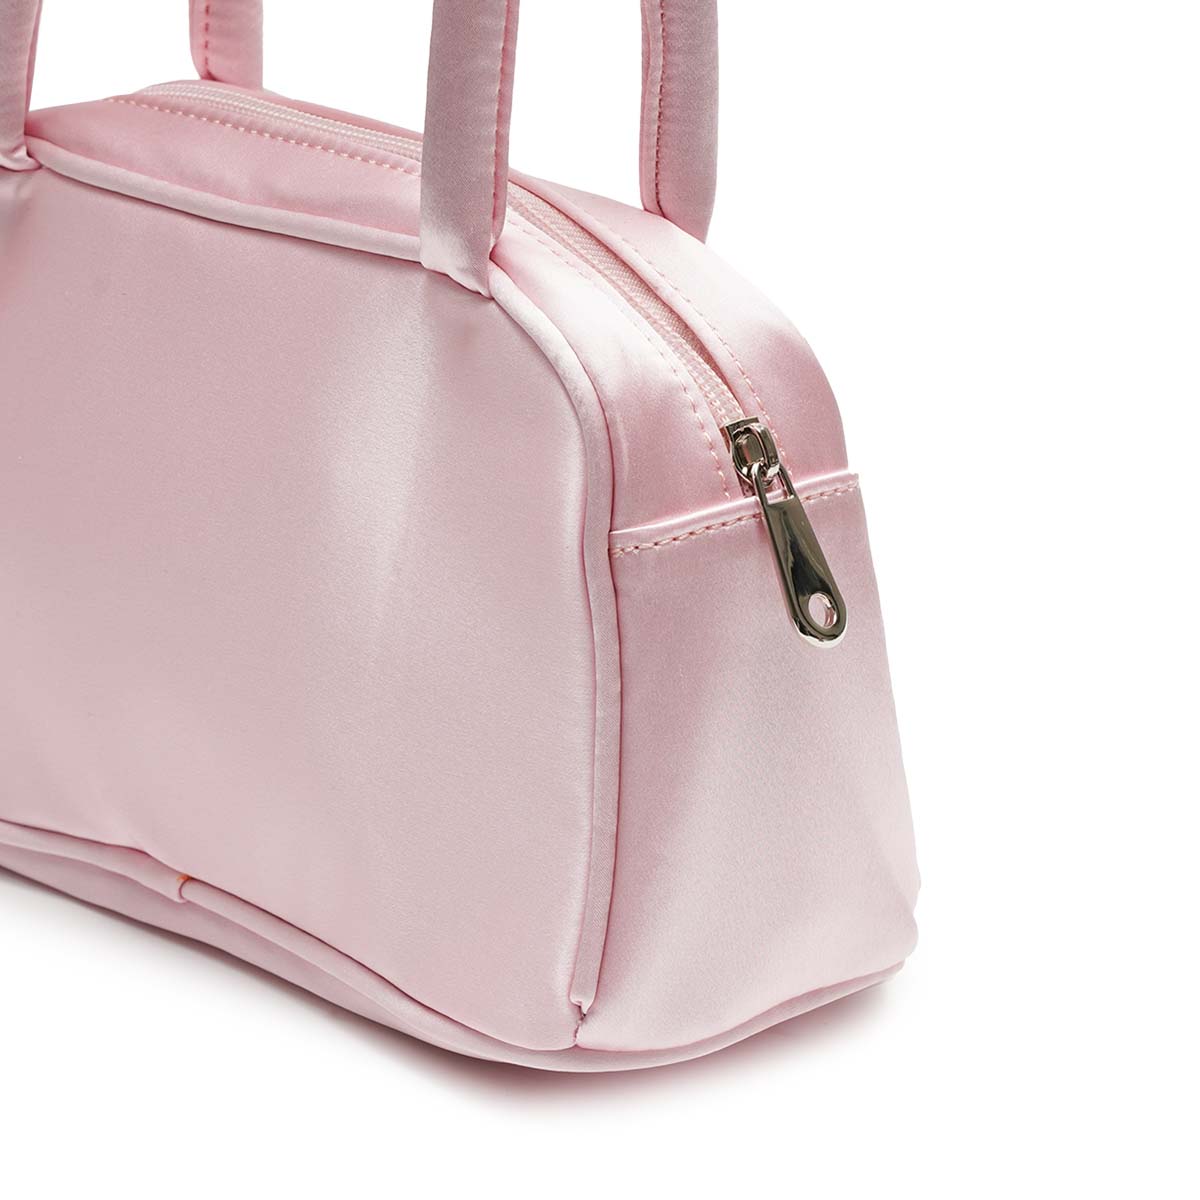 하이 hai Dakota bag (pink) - OCO, 브랜드 편집샵 오씨오